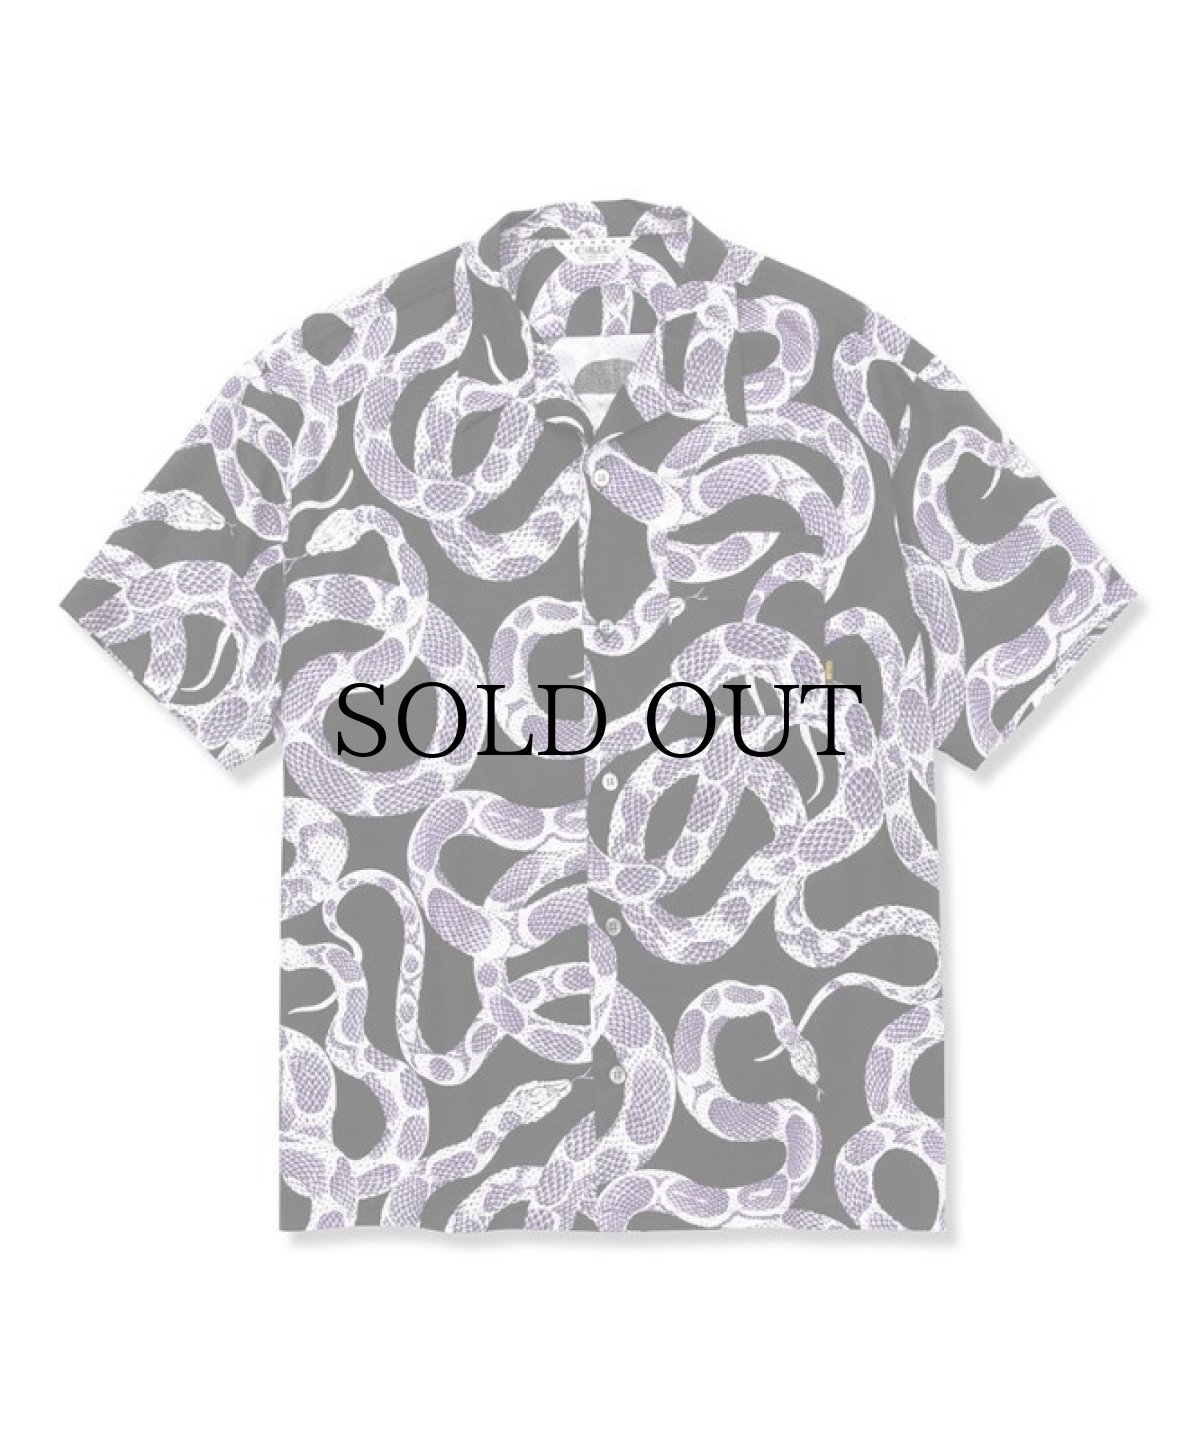 画像1: CALEE(キャリー) / Allover snake pattern S/S shirt (1)